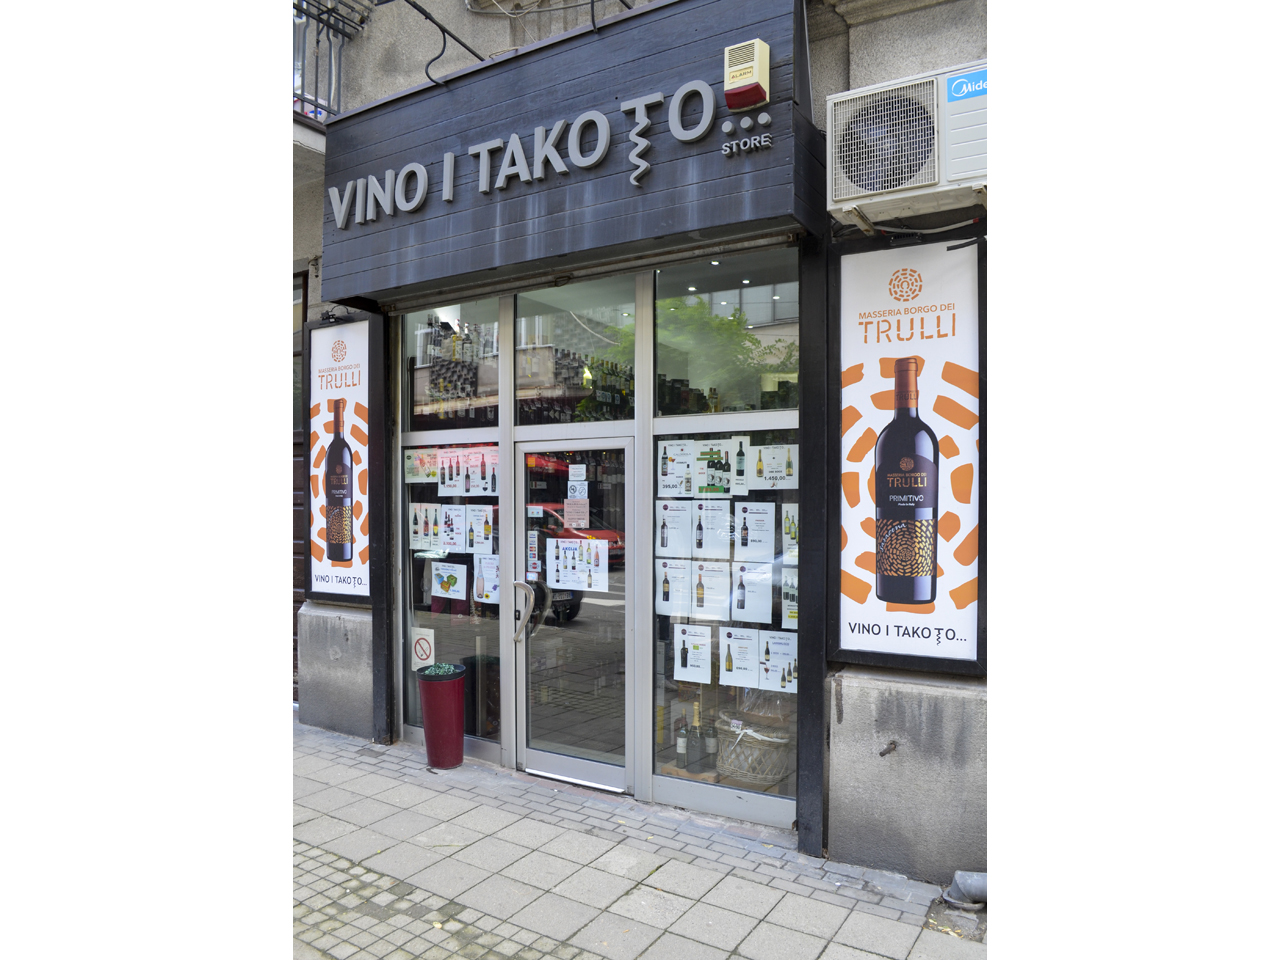 Photo 1 - VINO I TAKO TO... Vineries, wine shops Belgrade